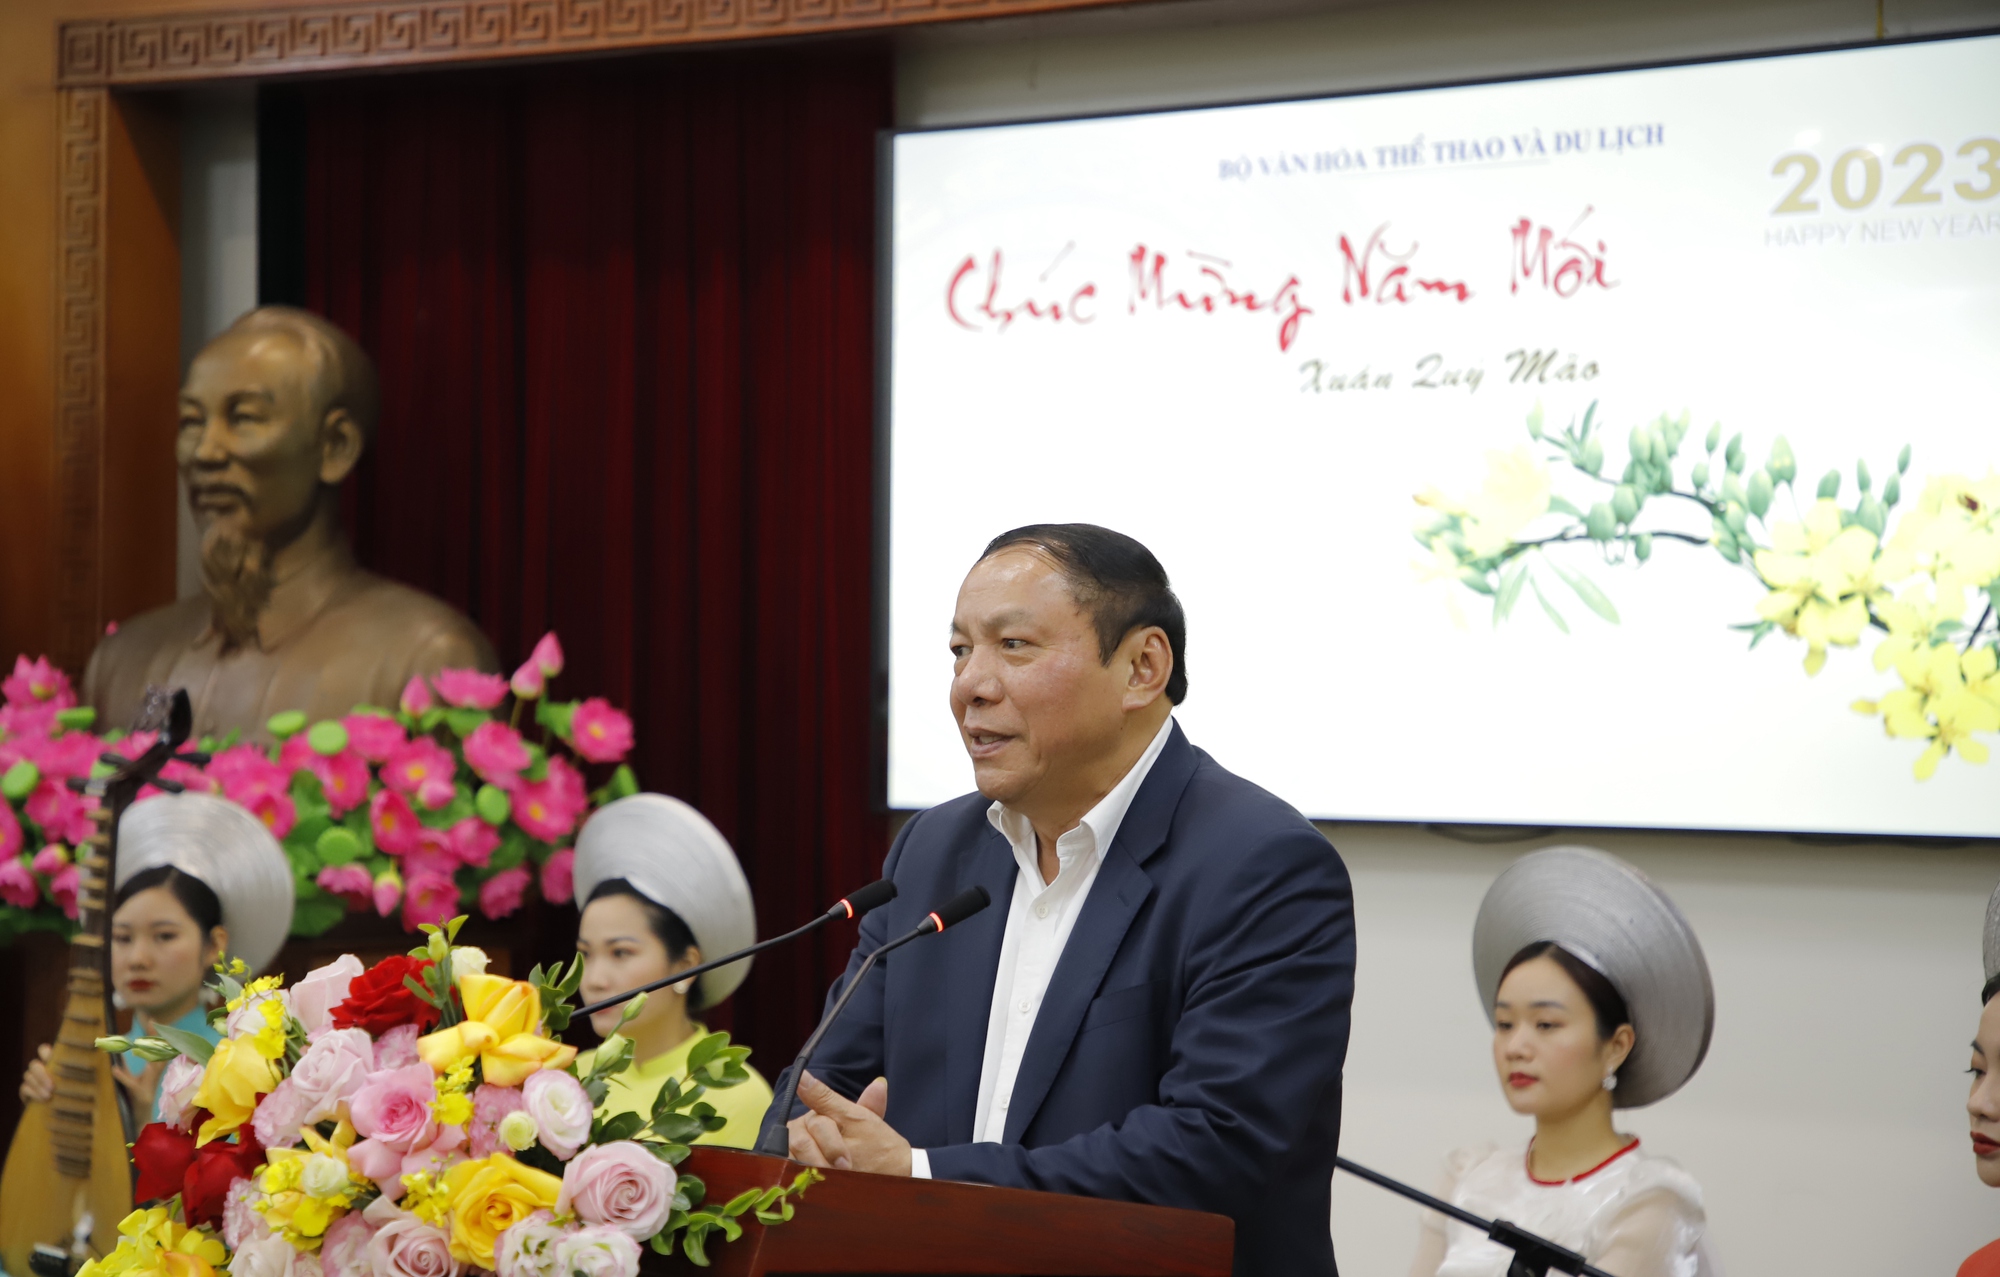 Bộ trưởng Nguyễn Văn Hùng: Kế thừa mạch nguồn truyền thống, kinh nghiệm lãnh đạo của các thế hệ đi trước để vị thế ngành VHTTDL ngày càng tốt hơn - Ảnh 3.